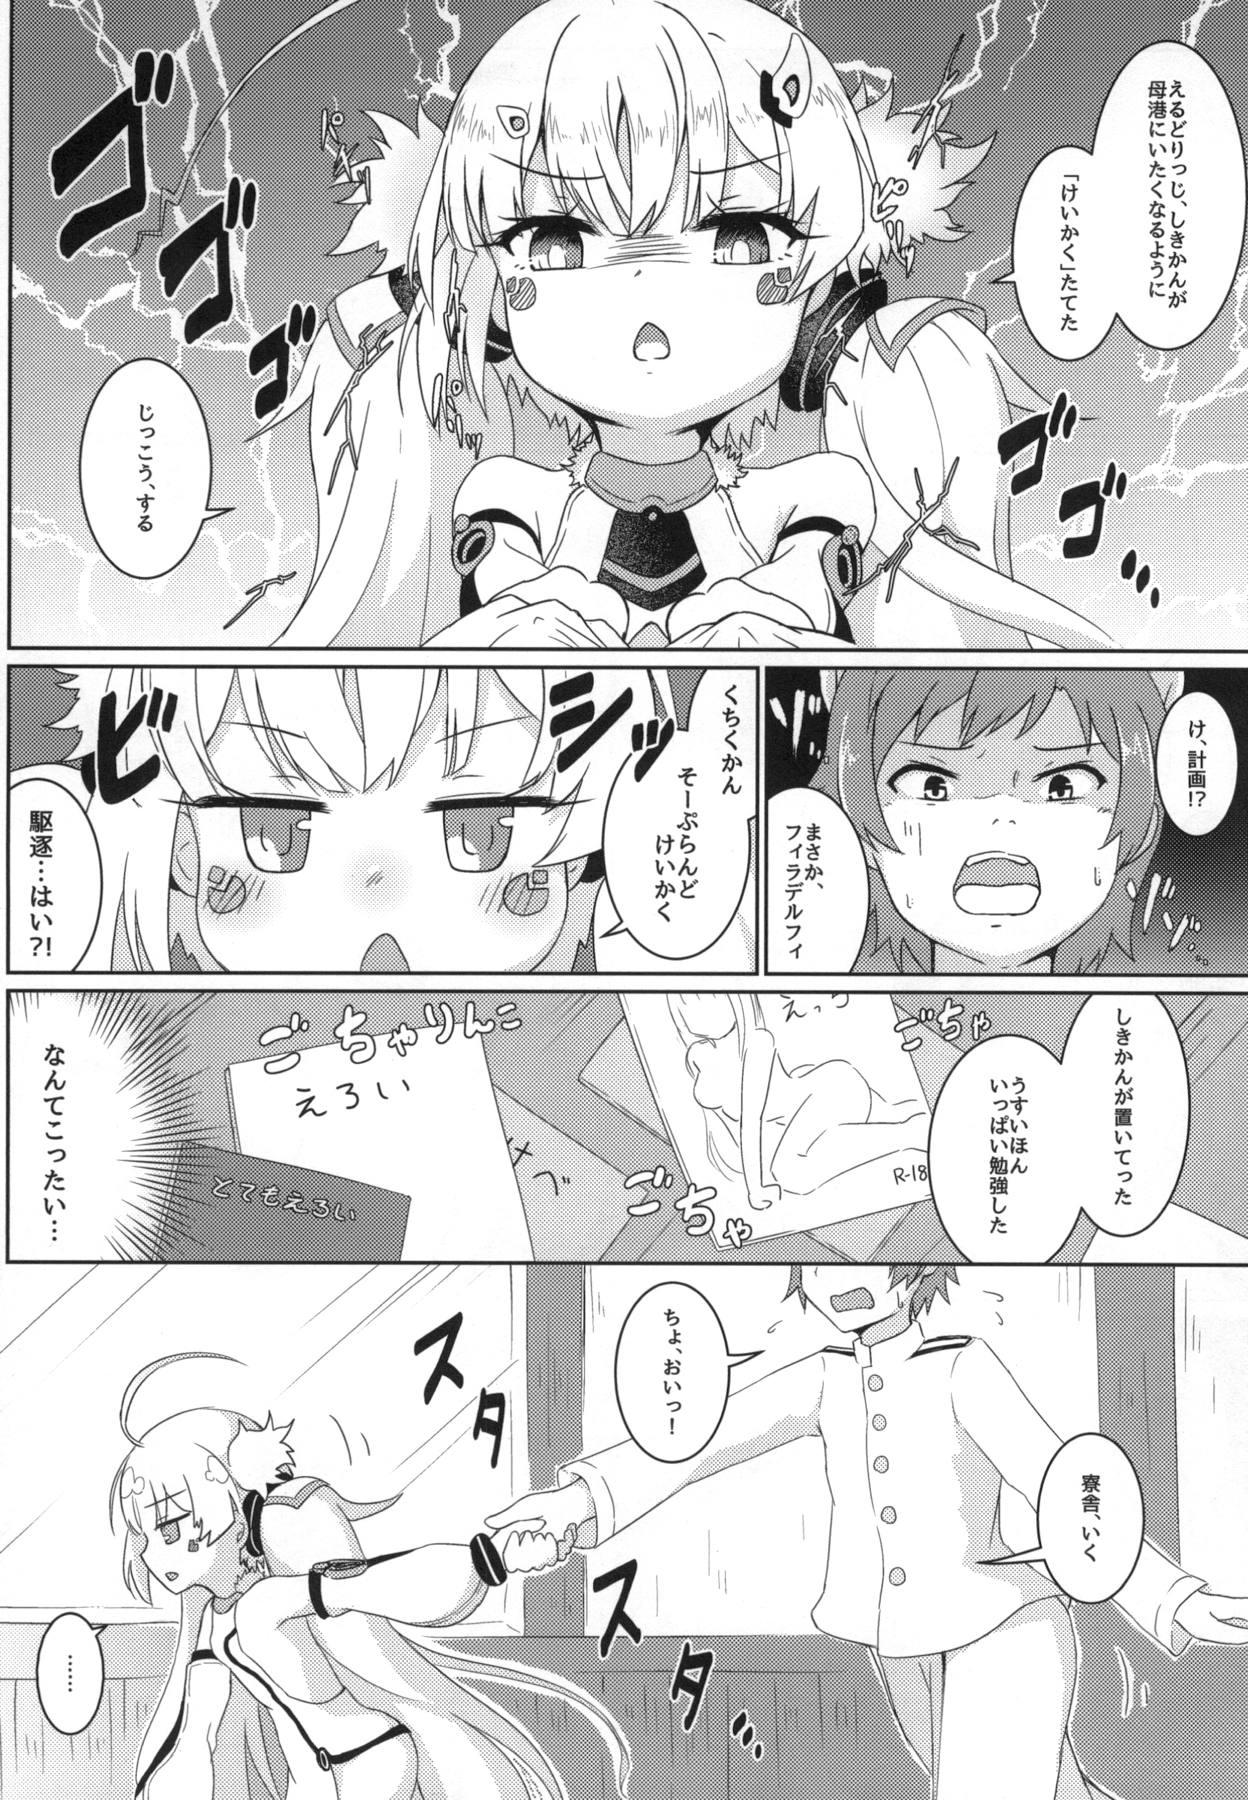 Punishment Hekiran no Umi ni Mita Gensou - Azur lane Bikini - Page 5